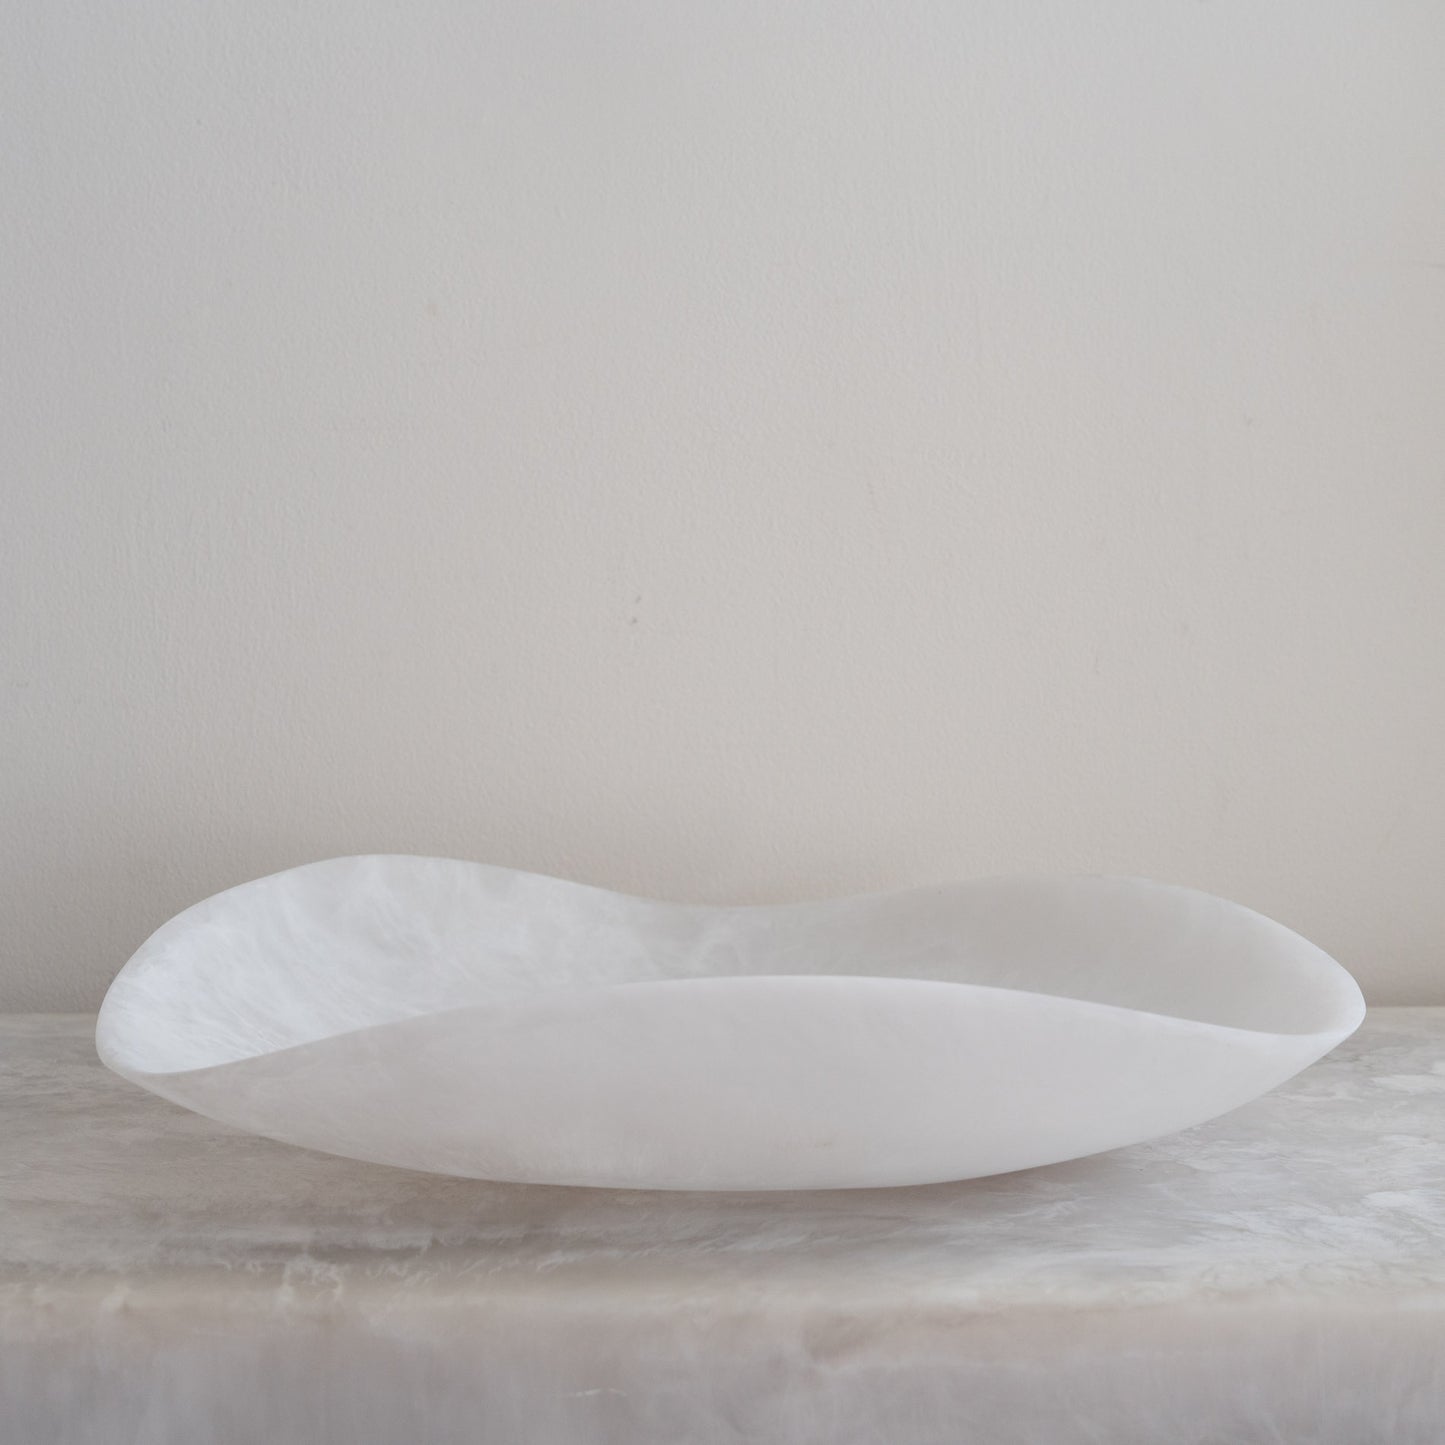 Small Resin Flower Bowl - White Marble